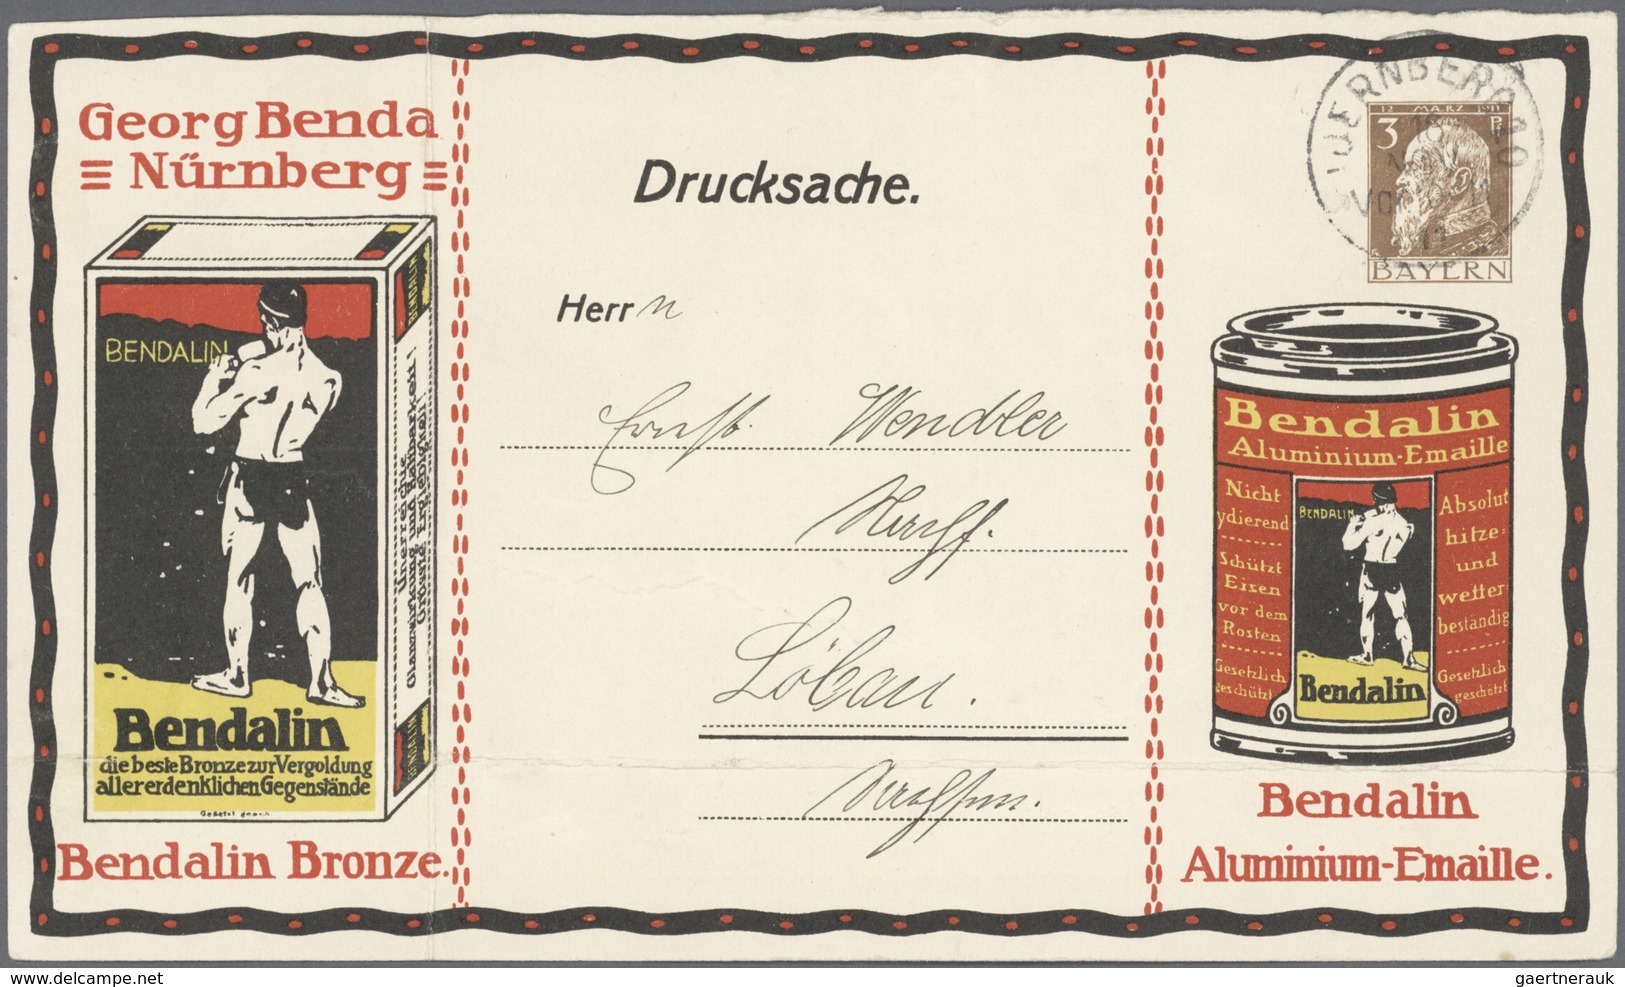 Deutschland: 1860/1945, einige hundert Briefe, Karten und Ganzsachen ab Altdeutsche Staaten bis Deut